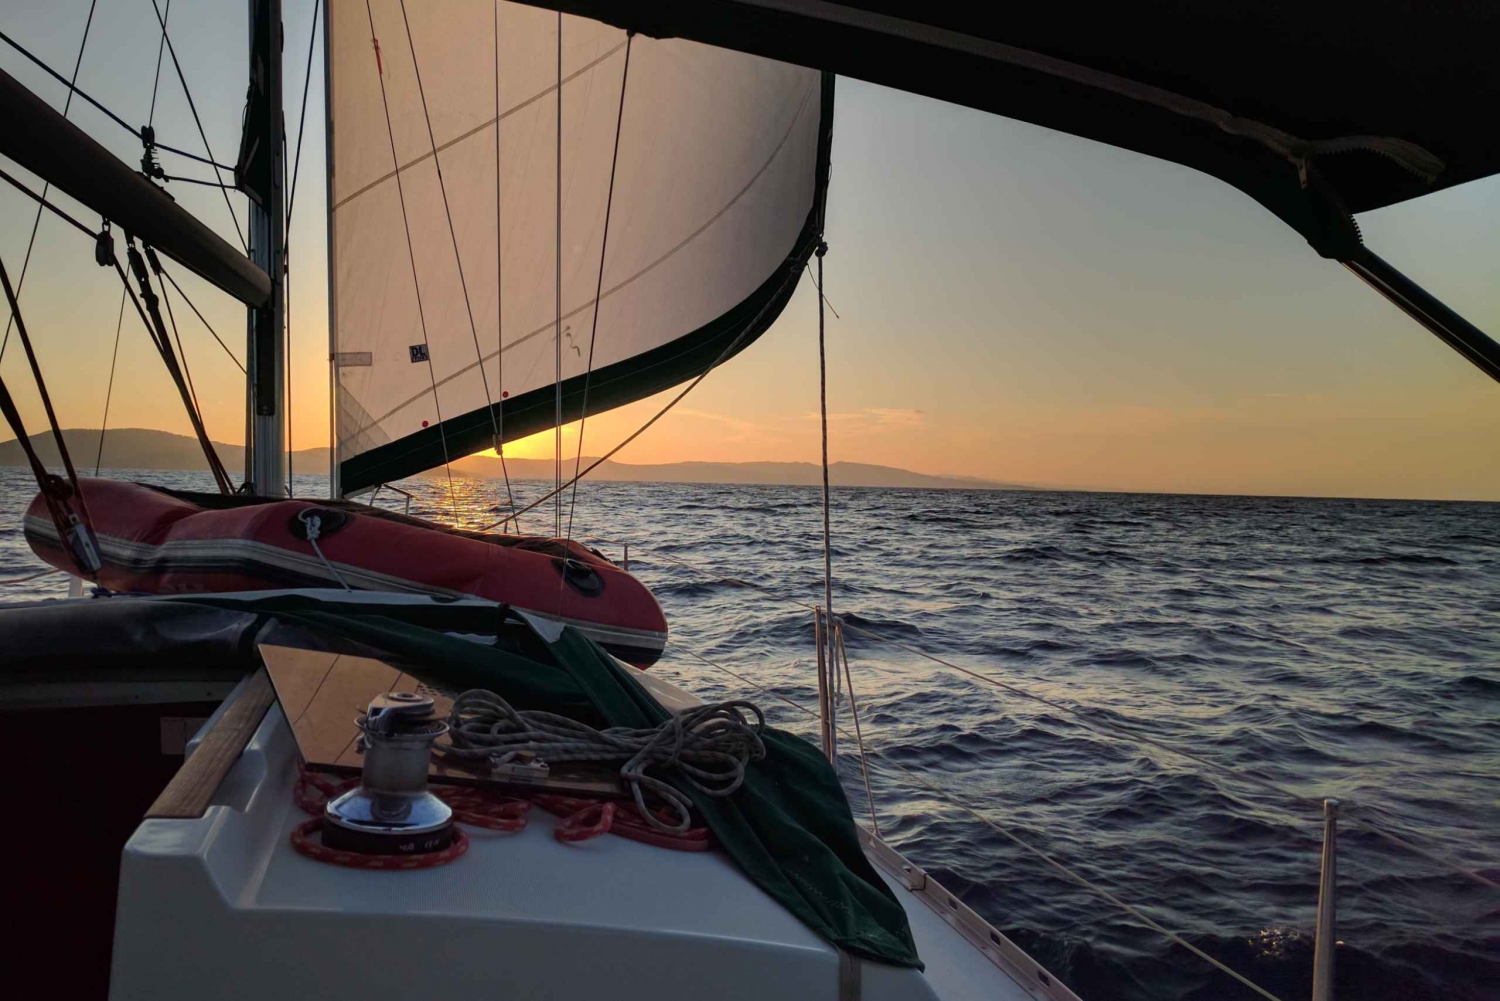 De Neos Marmaras: Passeio de barco ao pôr do sol em enseadas e ilhas